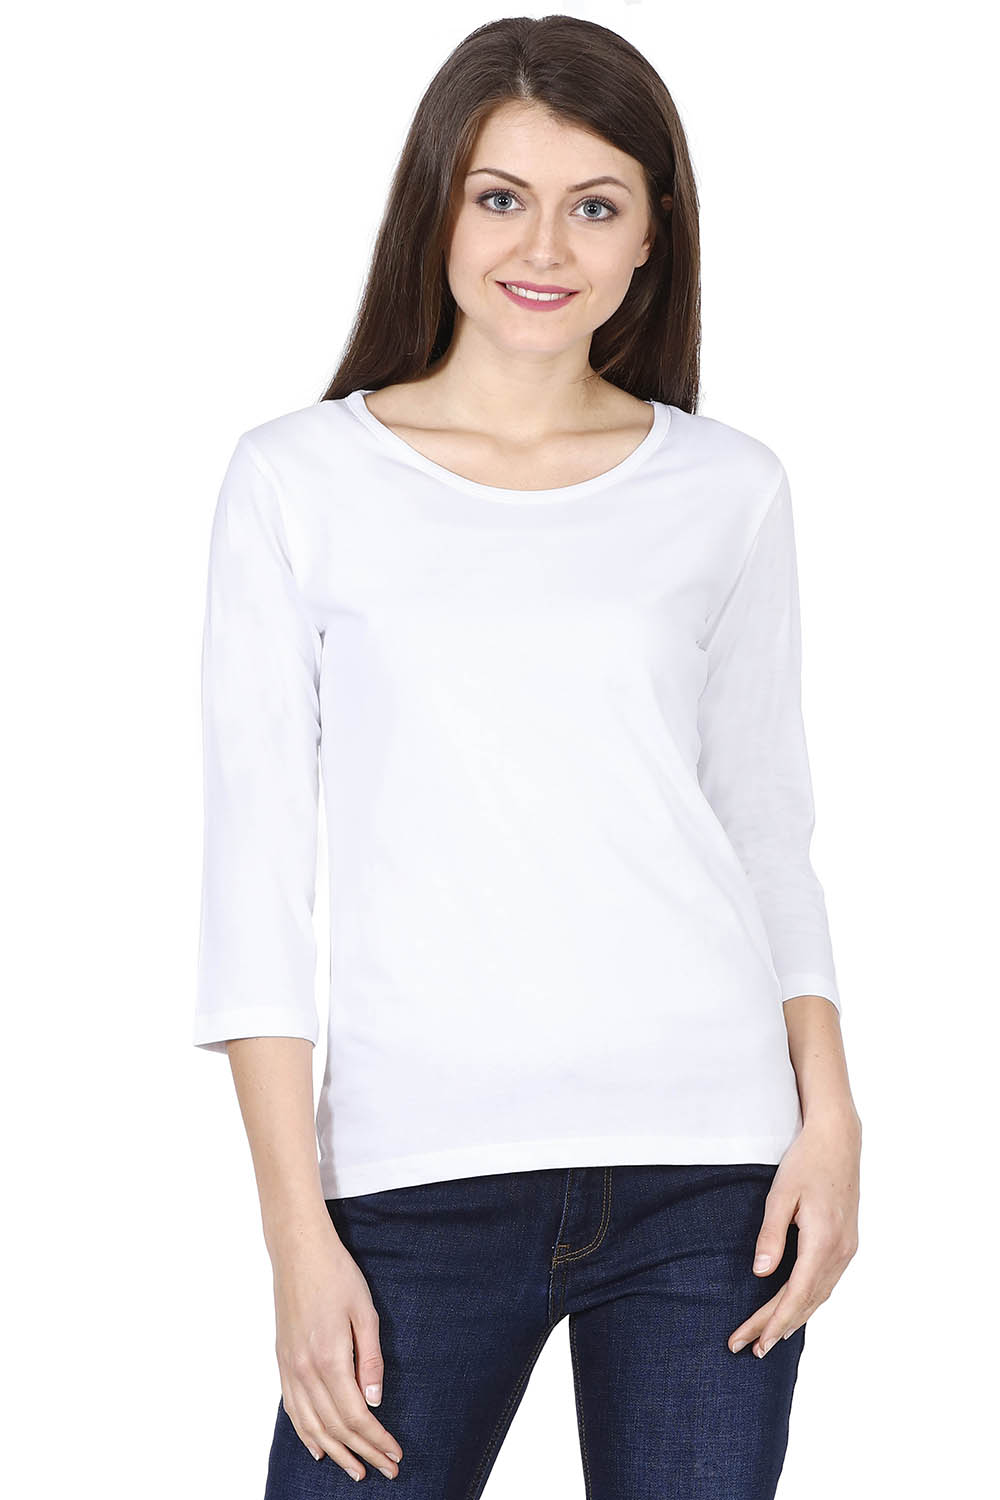 Women's Plain White Full Sleeve Tshirt - meltmoon.com